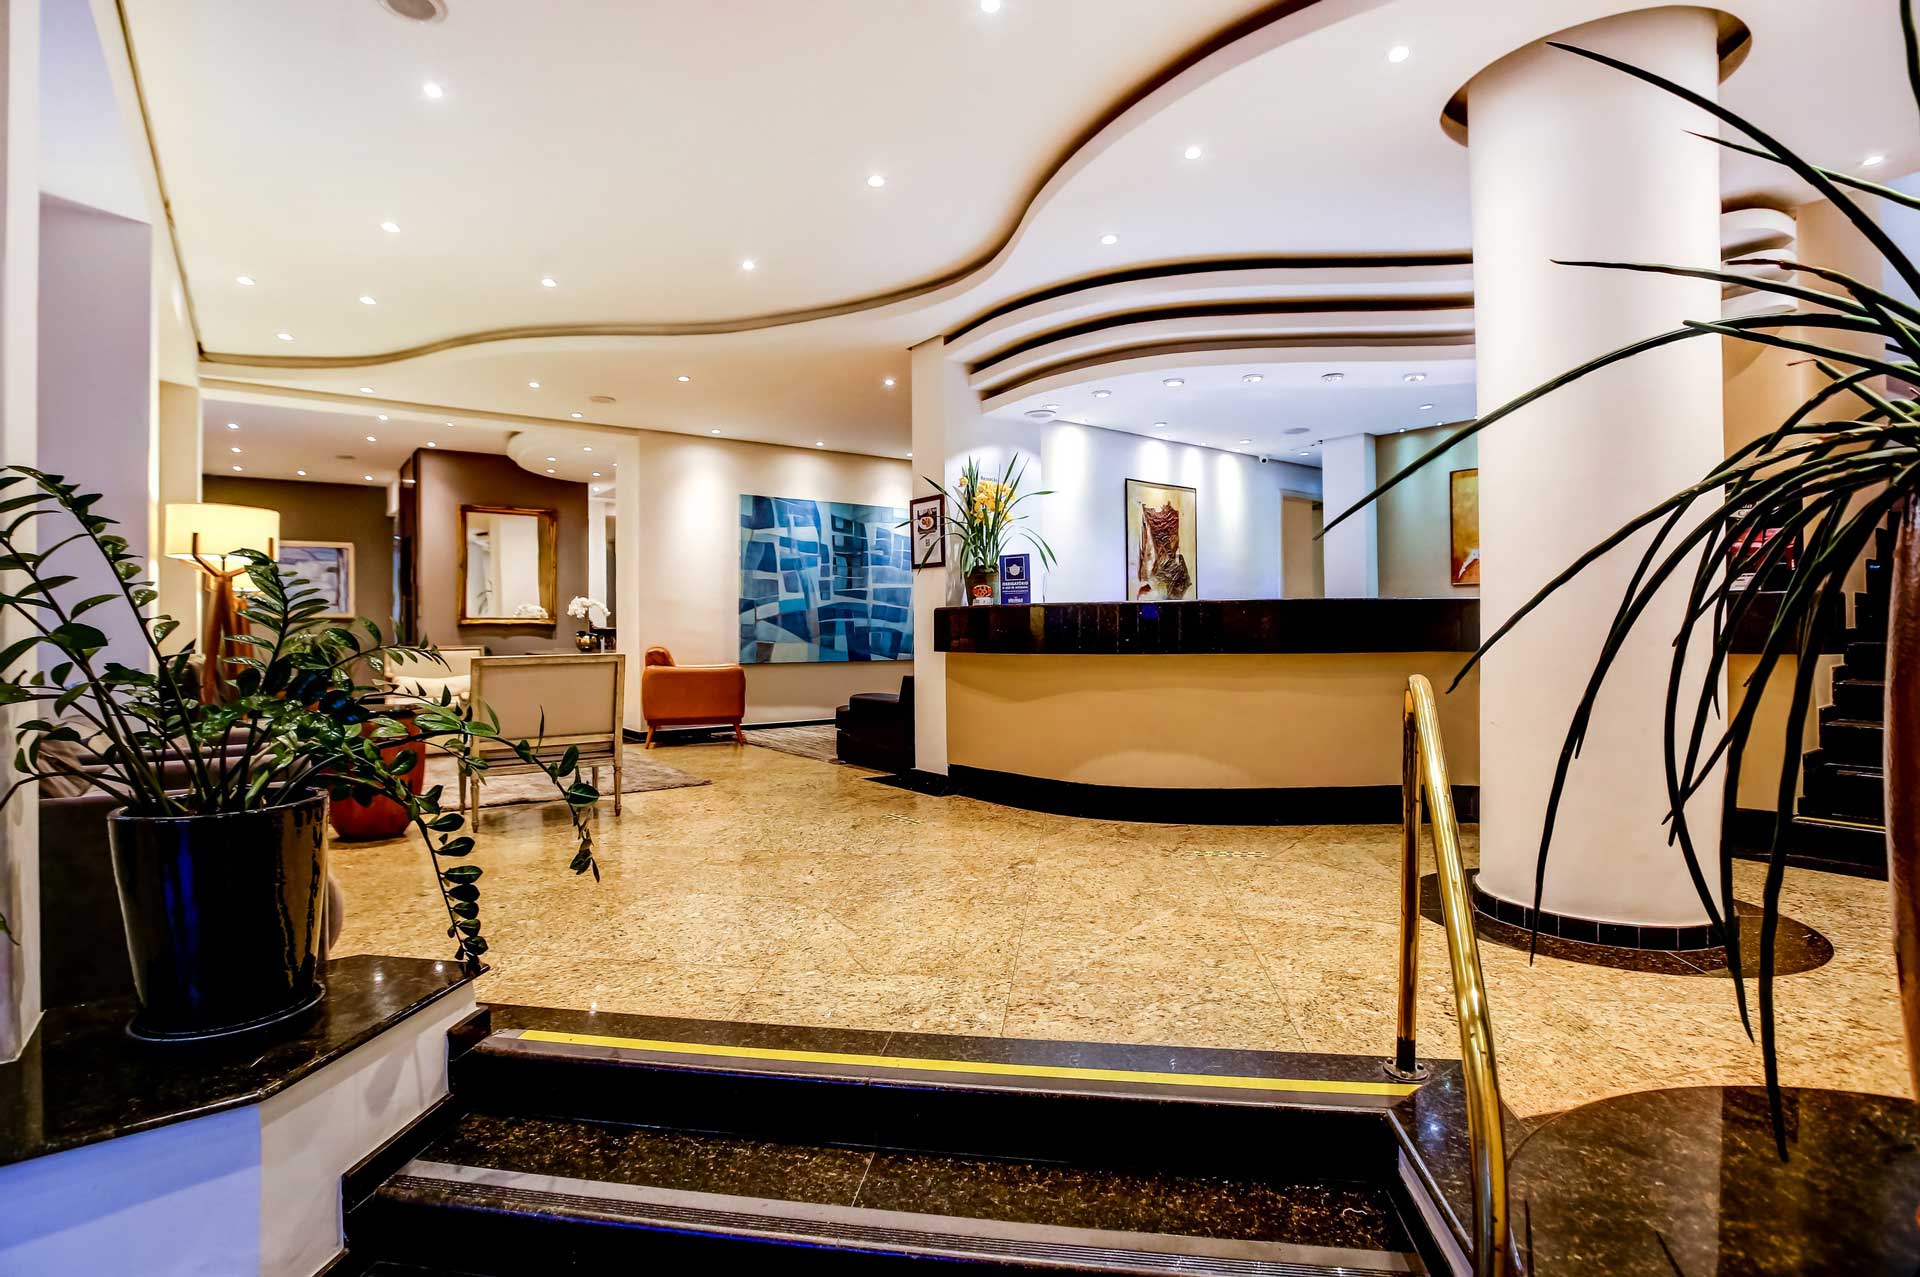 (c) Hotelshelton.com.br